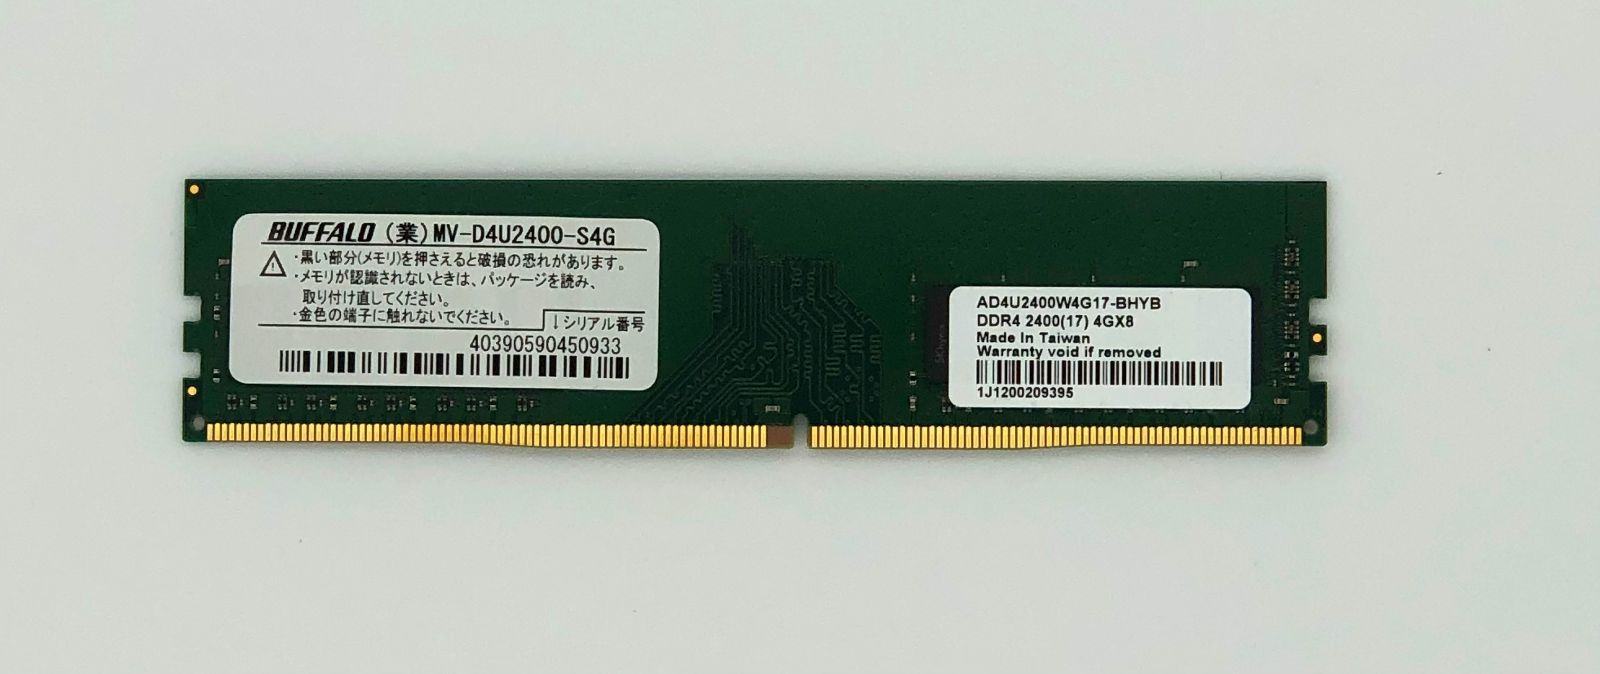 デスクトップPC用メモリ MV-D4U2400-S4G 買い物 - PCパーツ